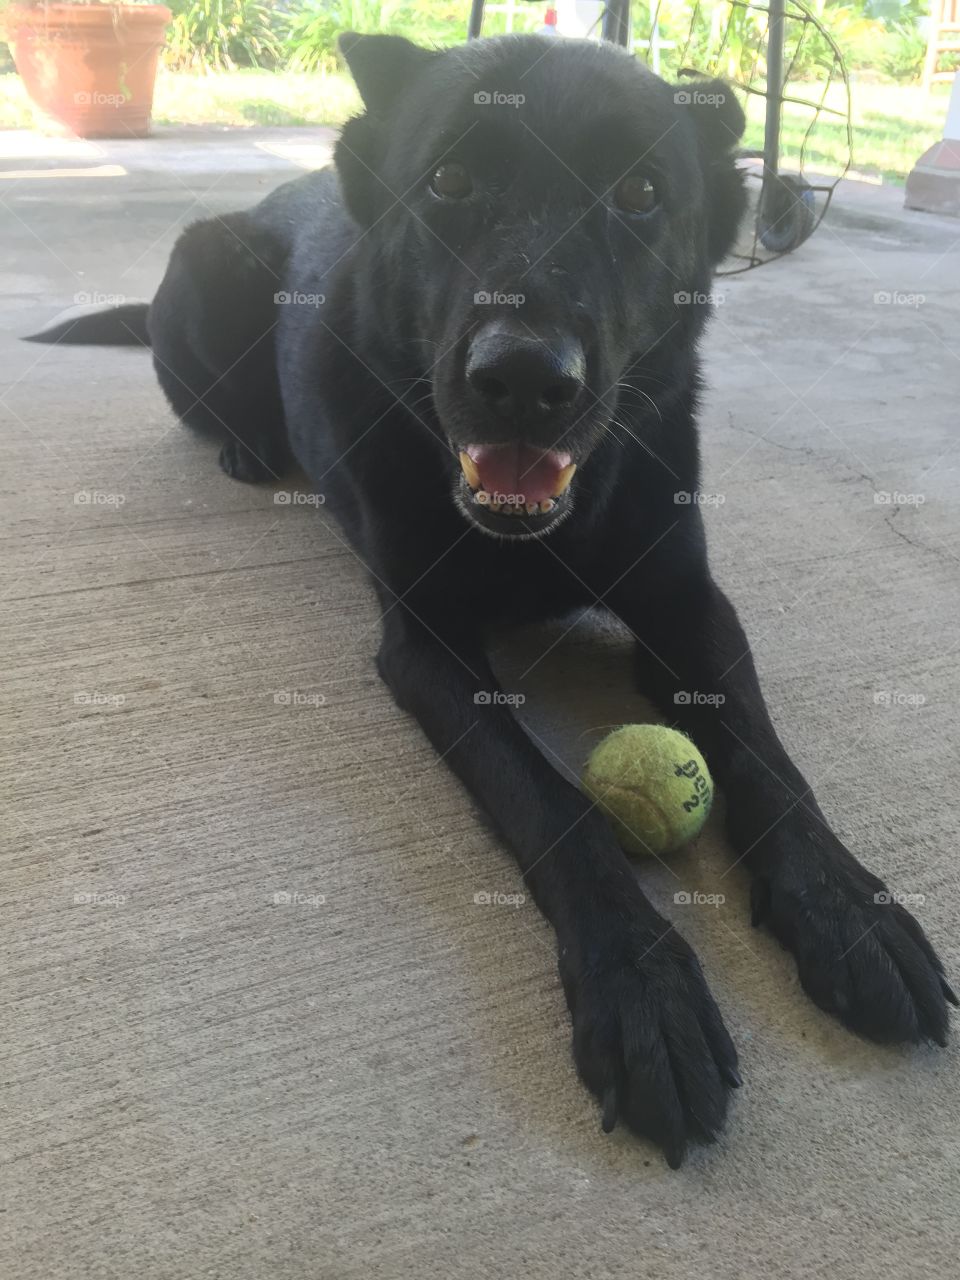 Got the ball. A dog with a ball